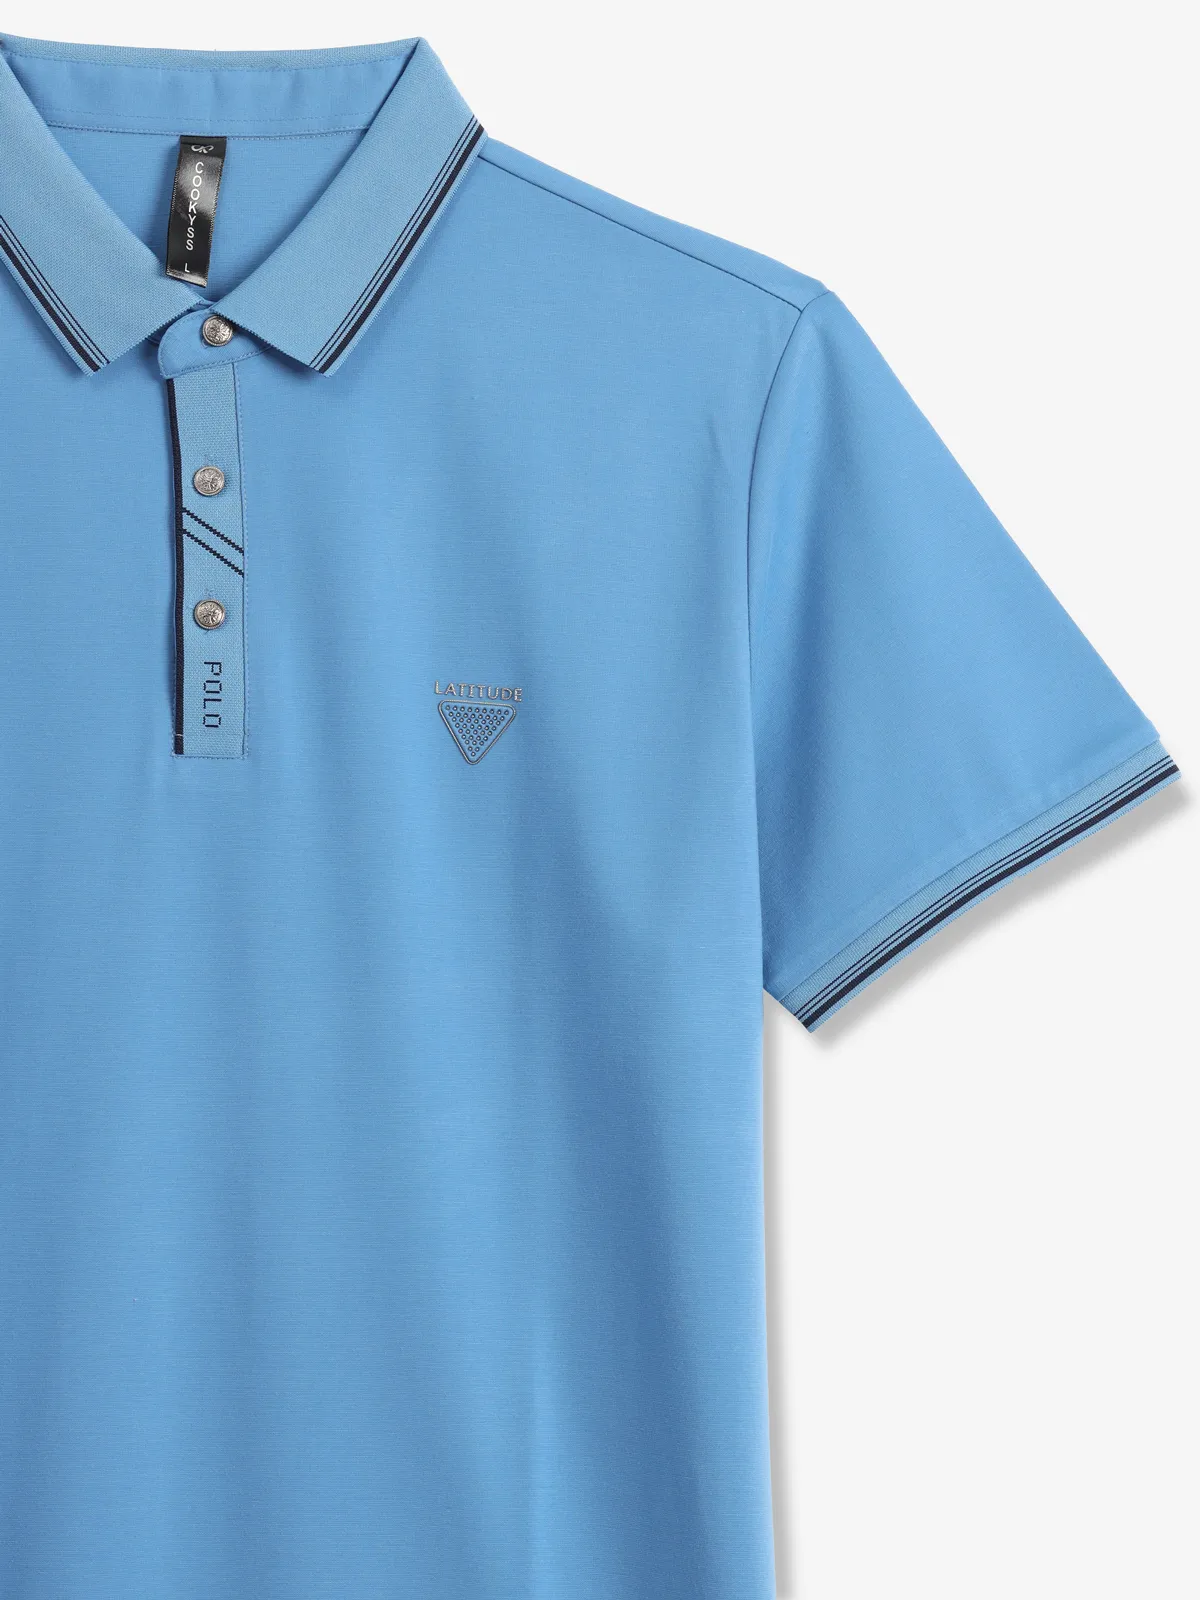 COOKYSS plain blue cotton polo t-shirt